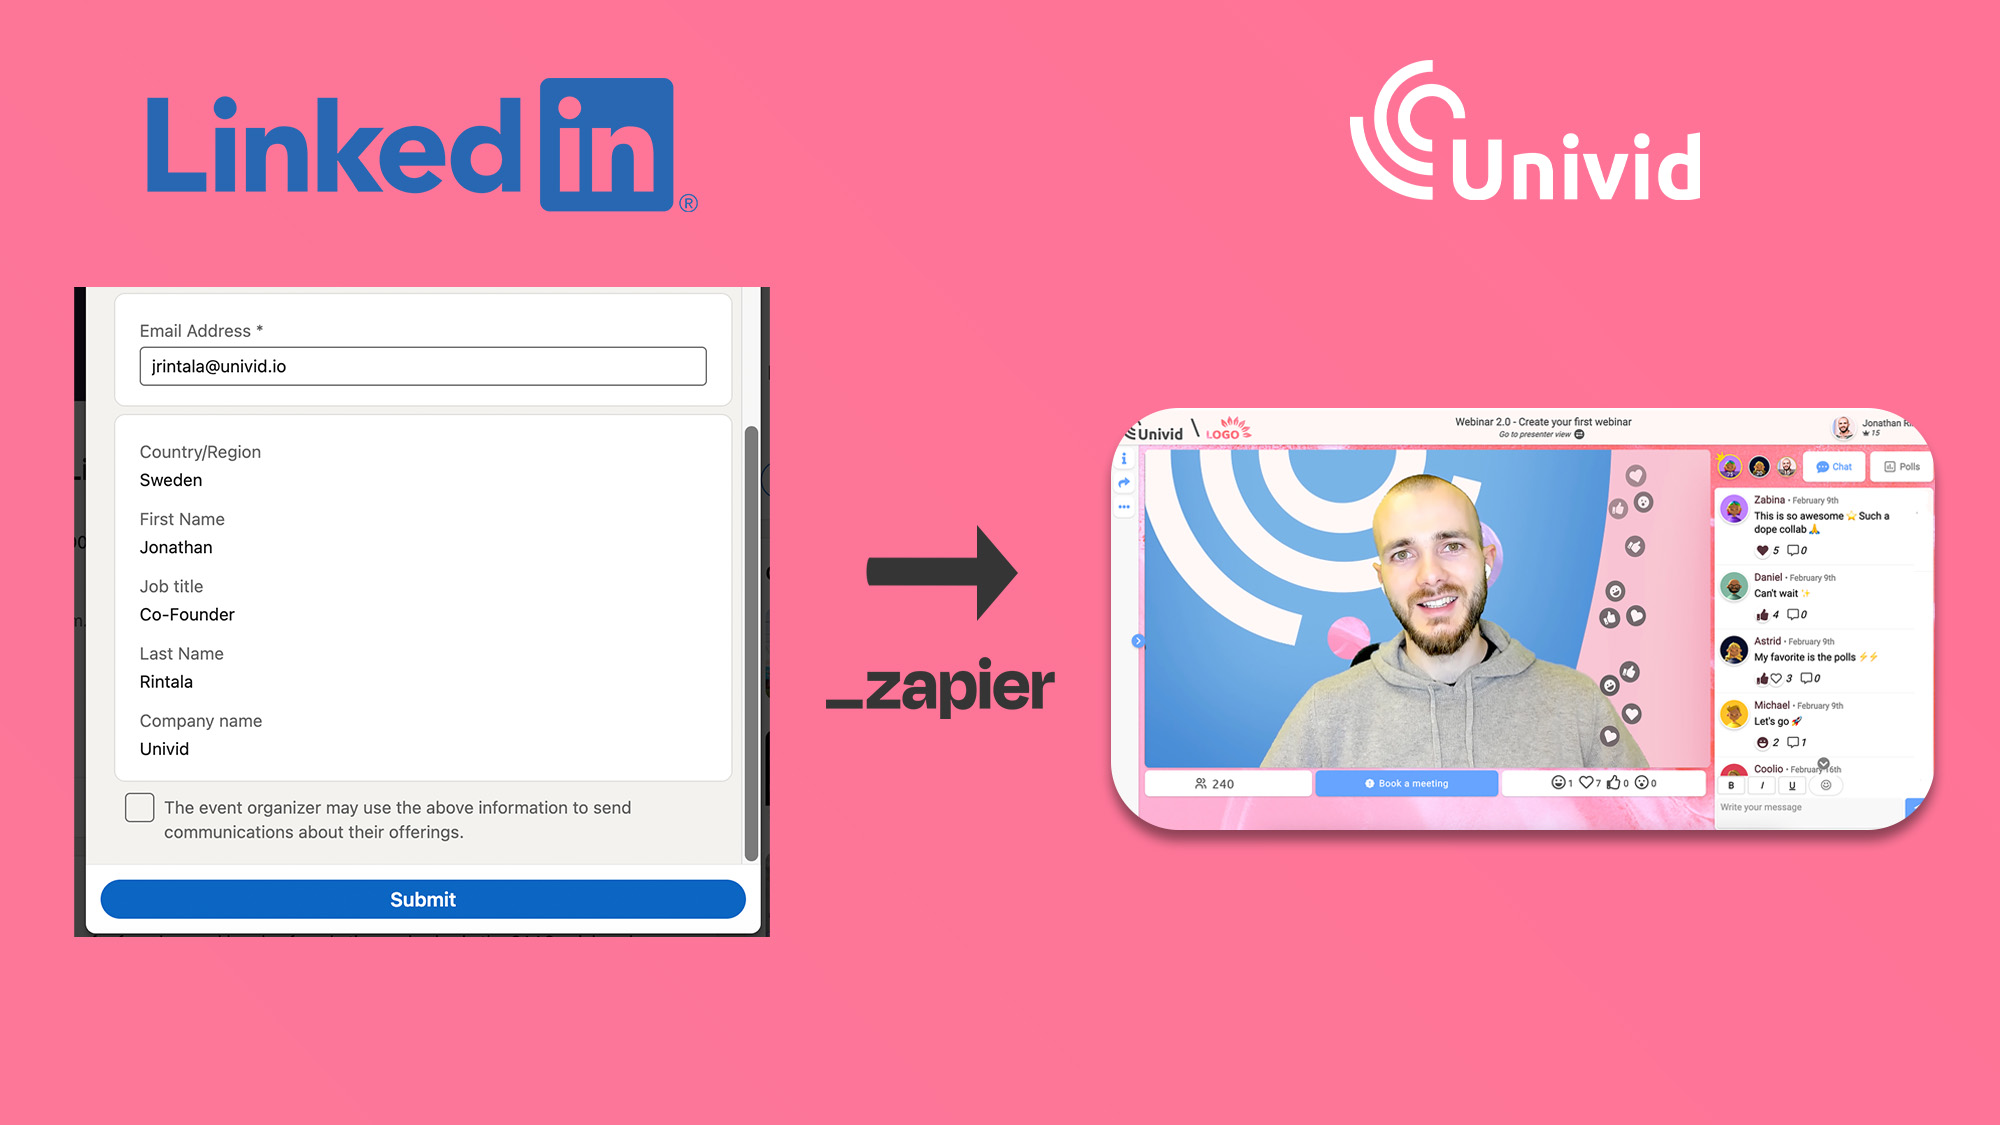 LinkedIn Live Event Registration Flow - To get registrant into Univid